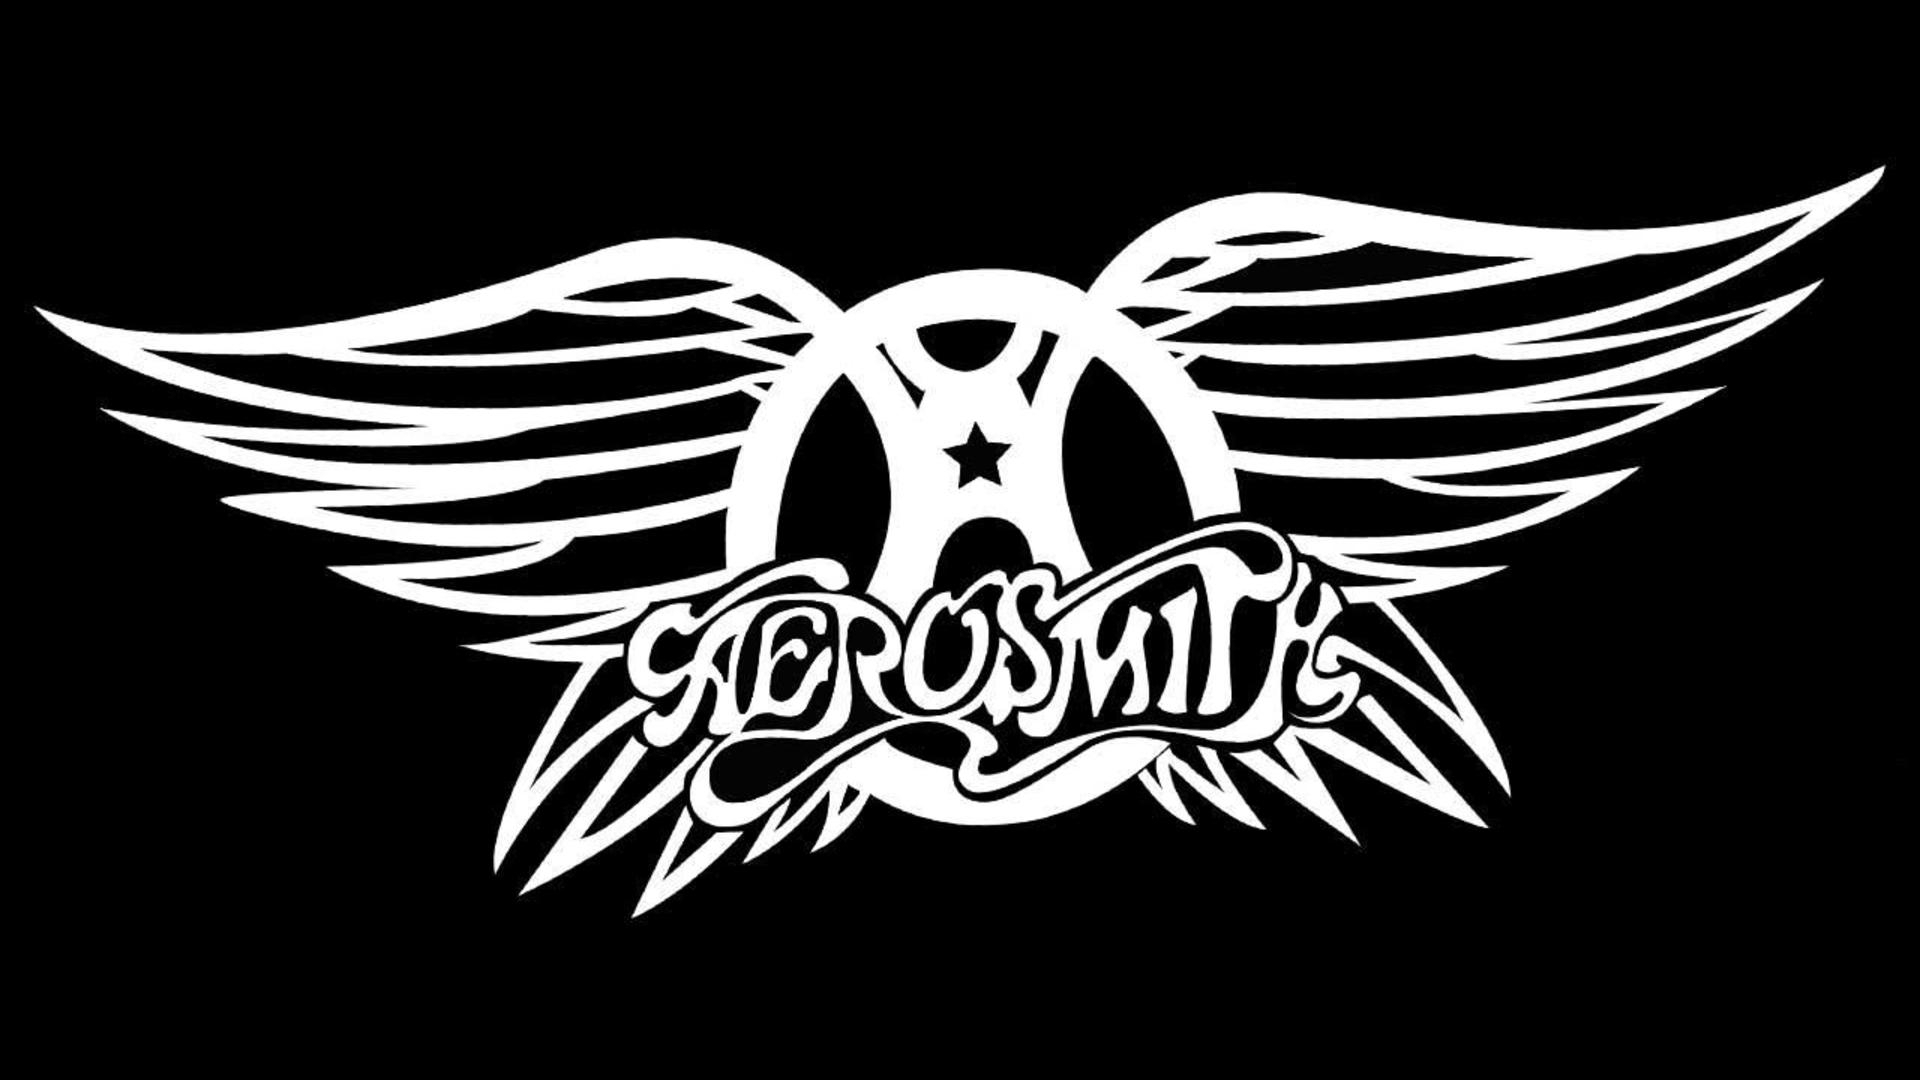  Aerosmith HQ Background Images